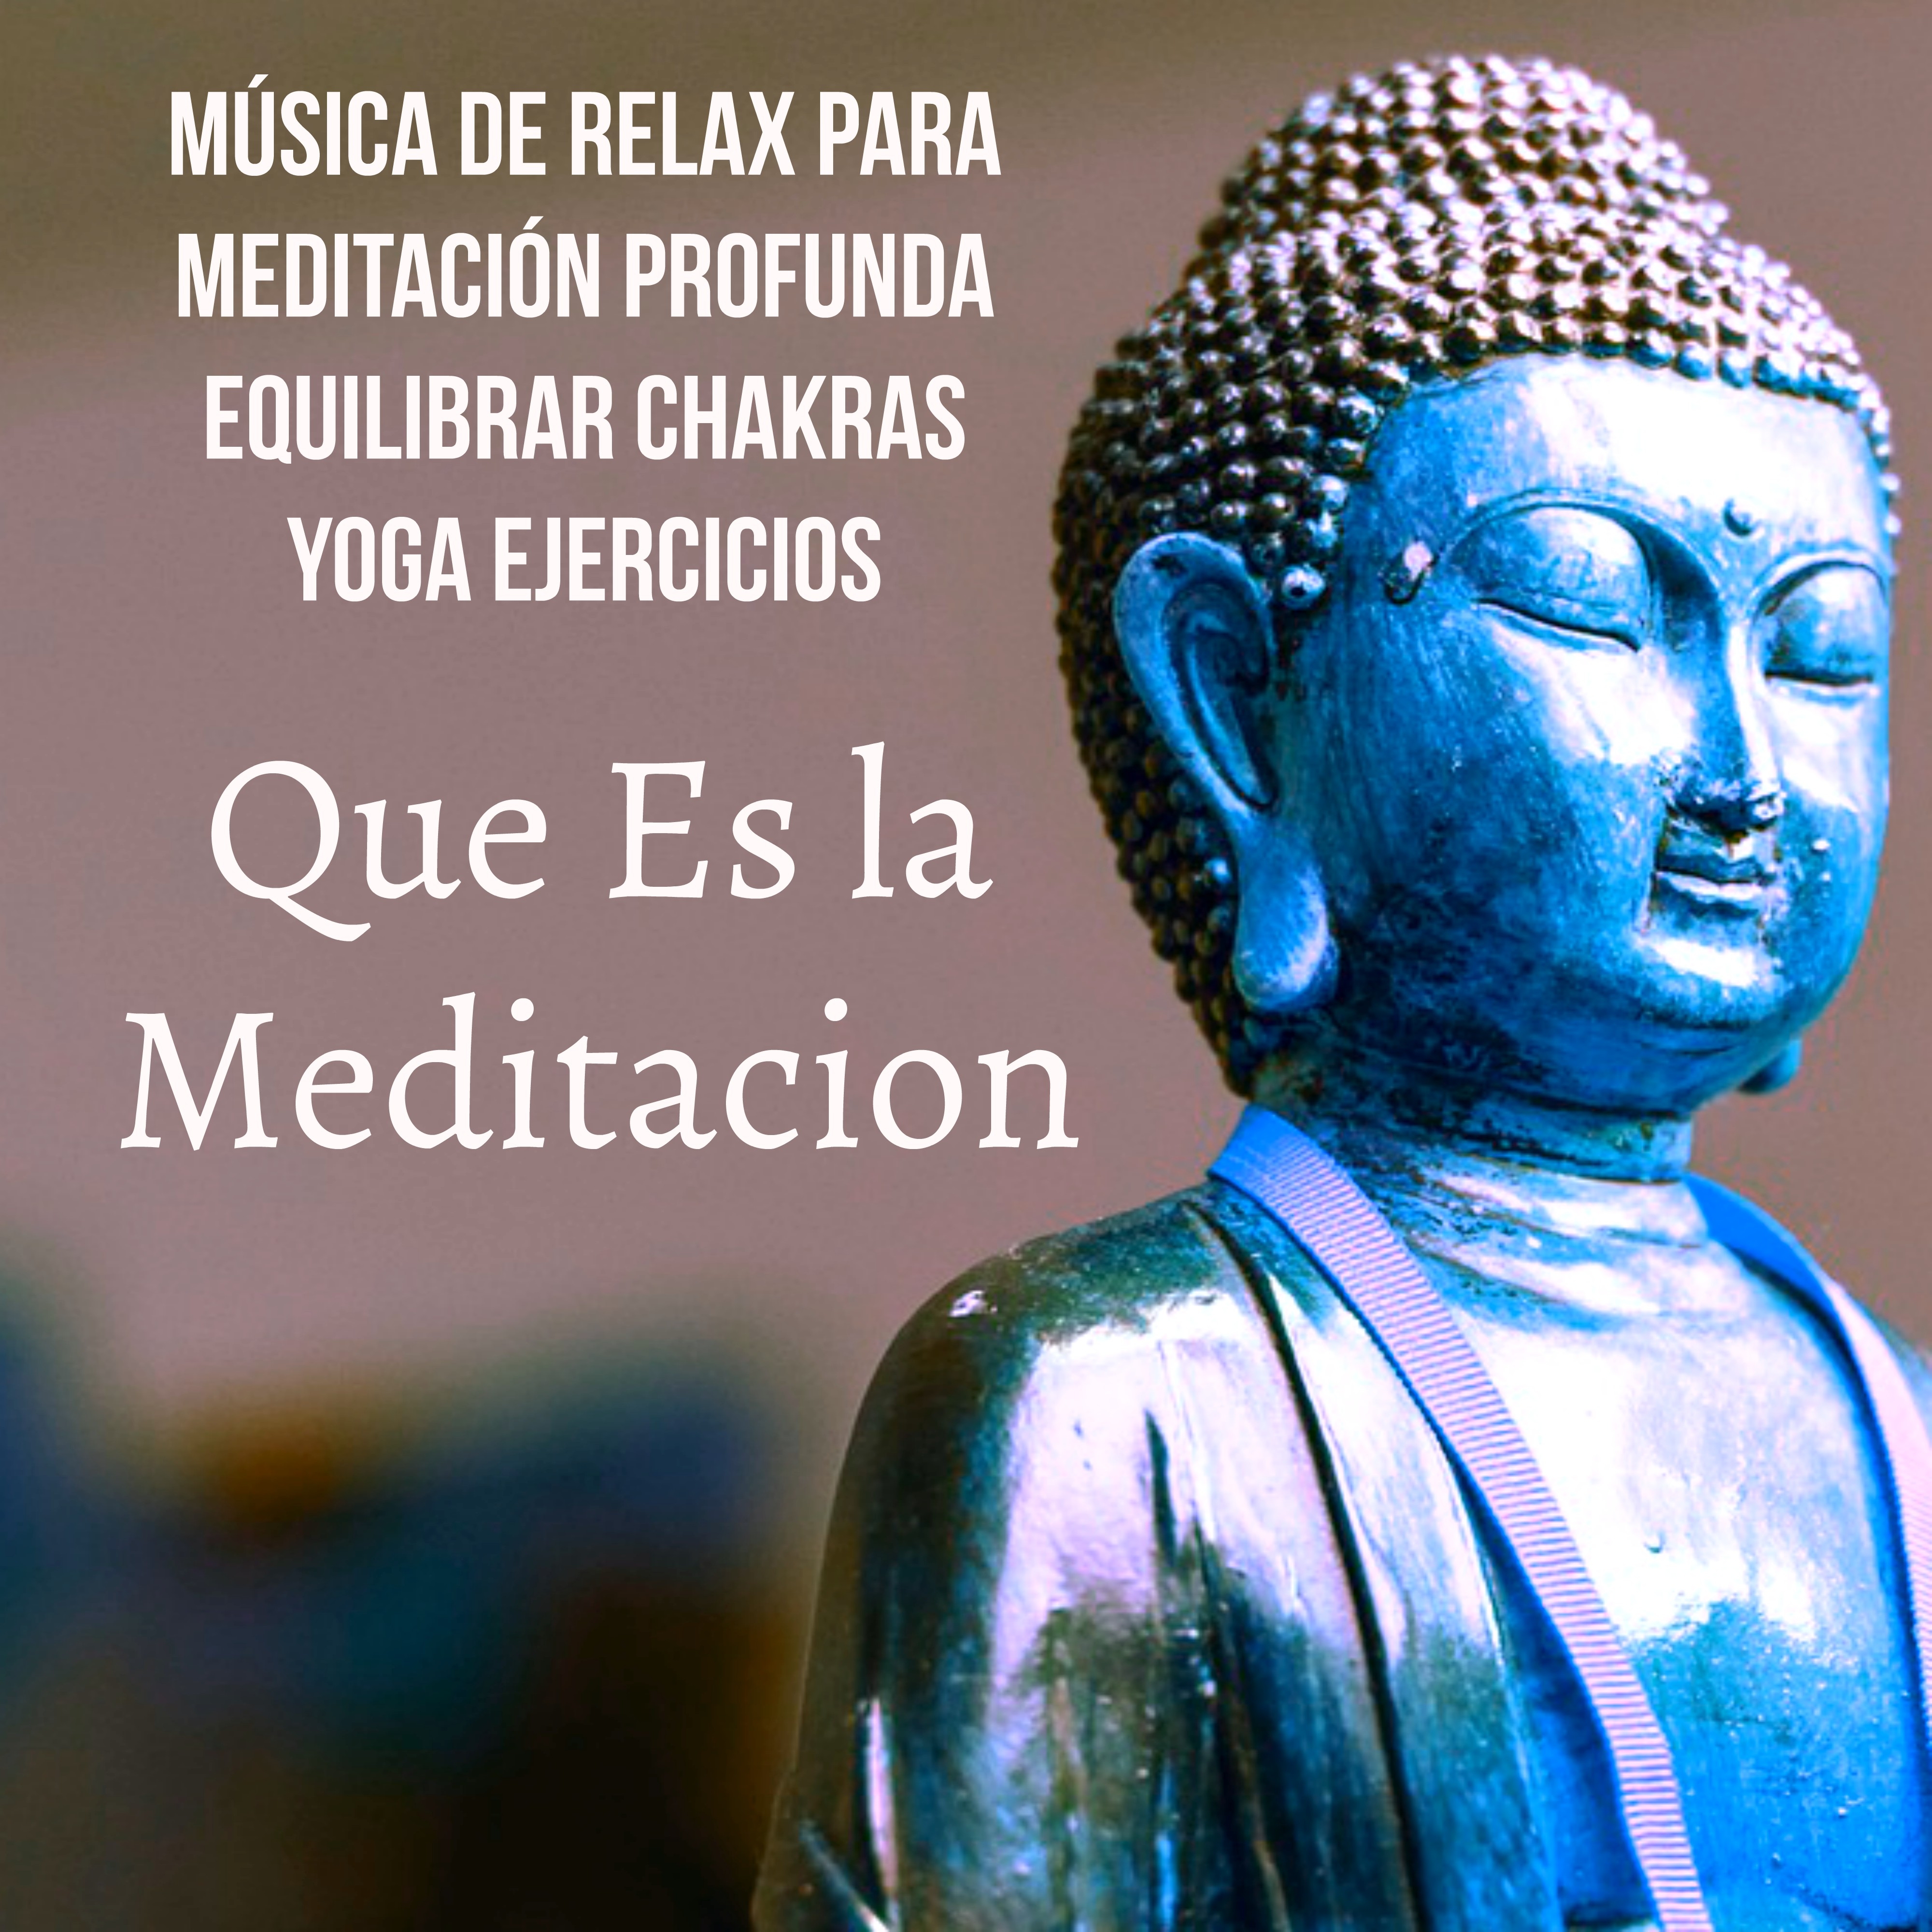 Que Es la Meditacion  Mu sica de Relax para Meditacio n Profunda Equilibrar Chakras Yoga Ejercicios con Sonidos de la Naturaleza New Age Instrumentales